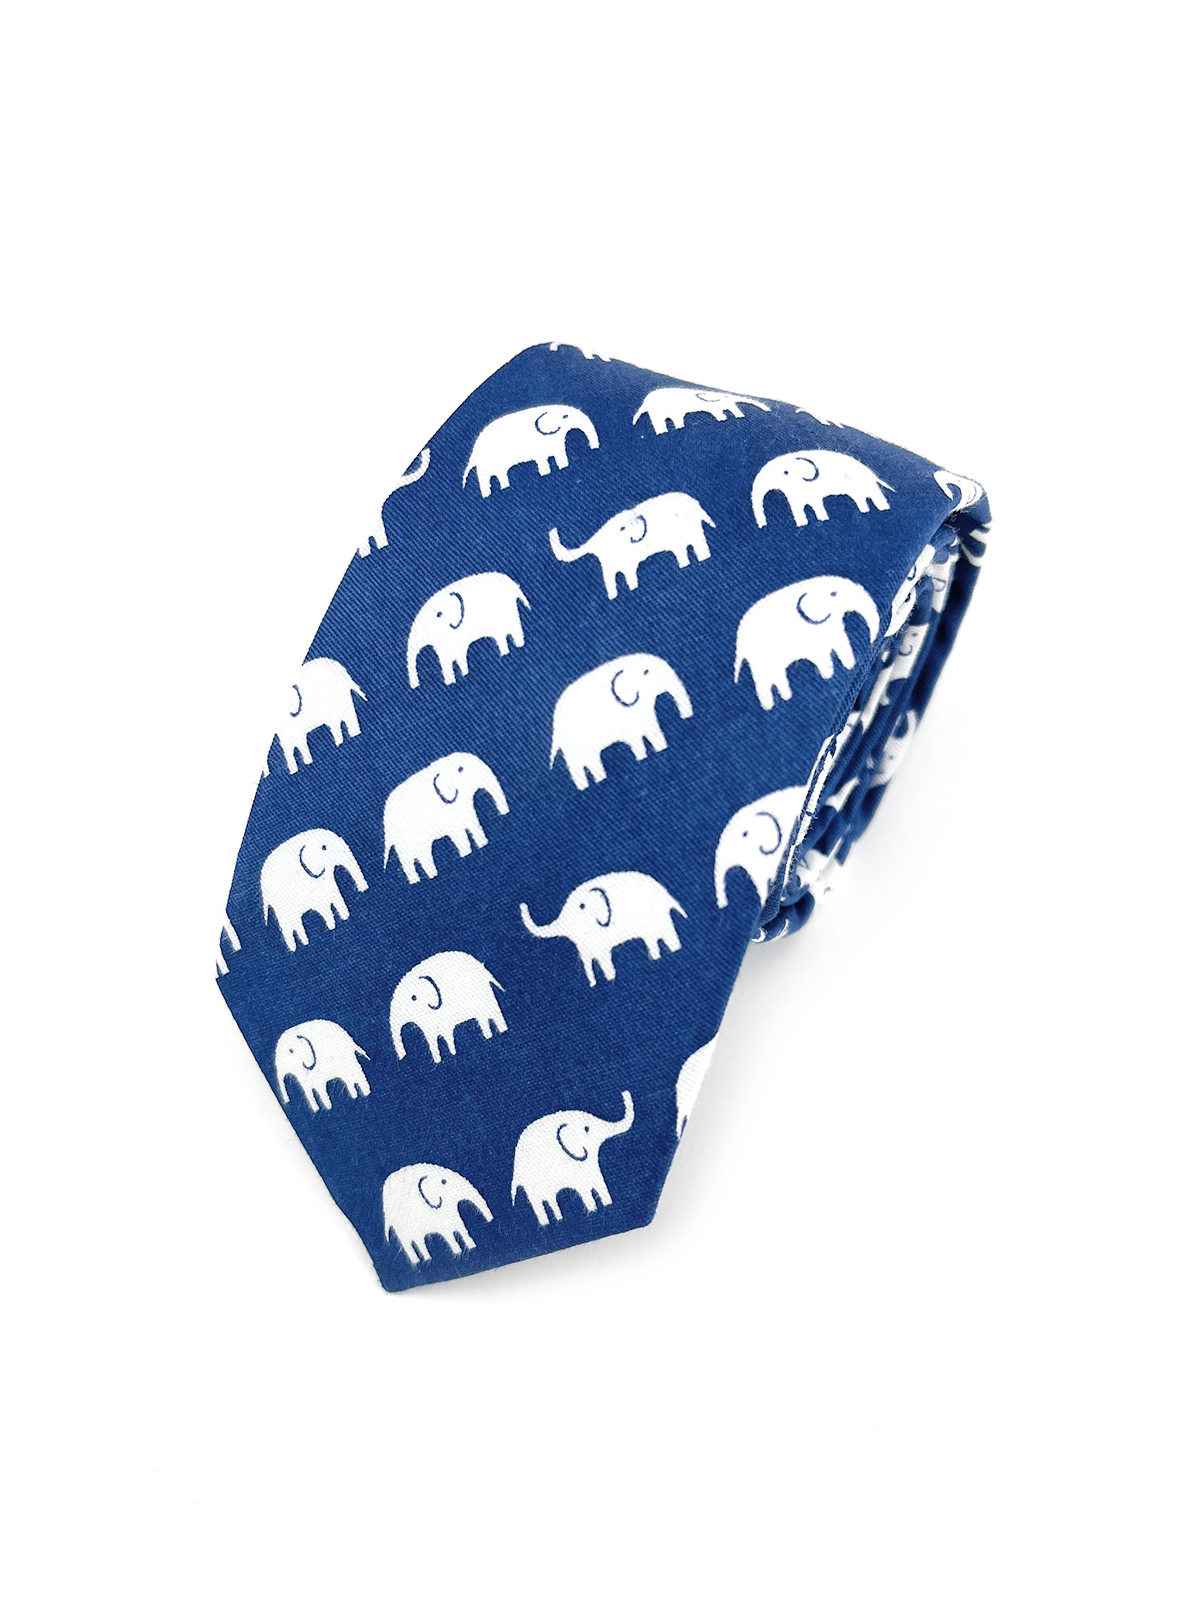 Галстук синий со слонами описание: Фасон - , Материал - Хлопок, Цвет - Синий, белый, Размер - 6 см х 145 см, Страна производства - Турция.